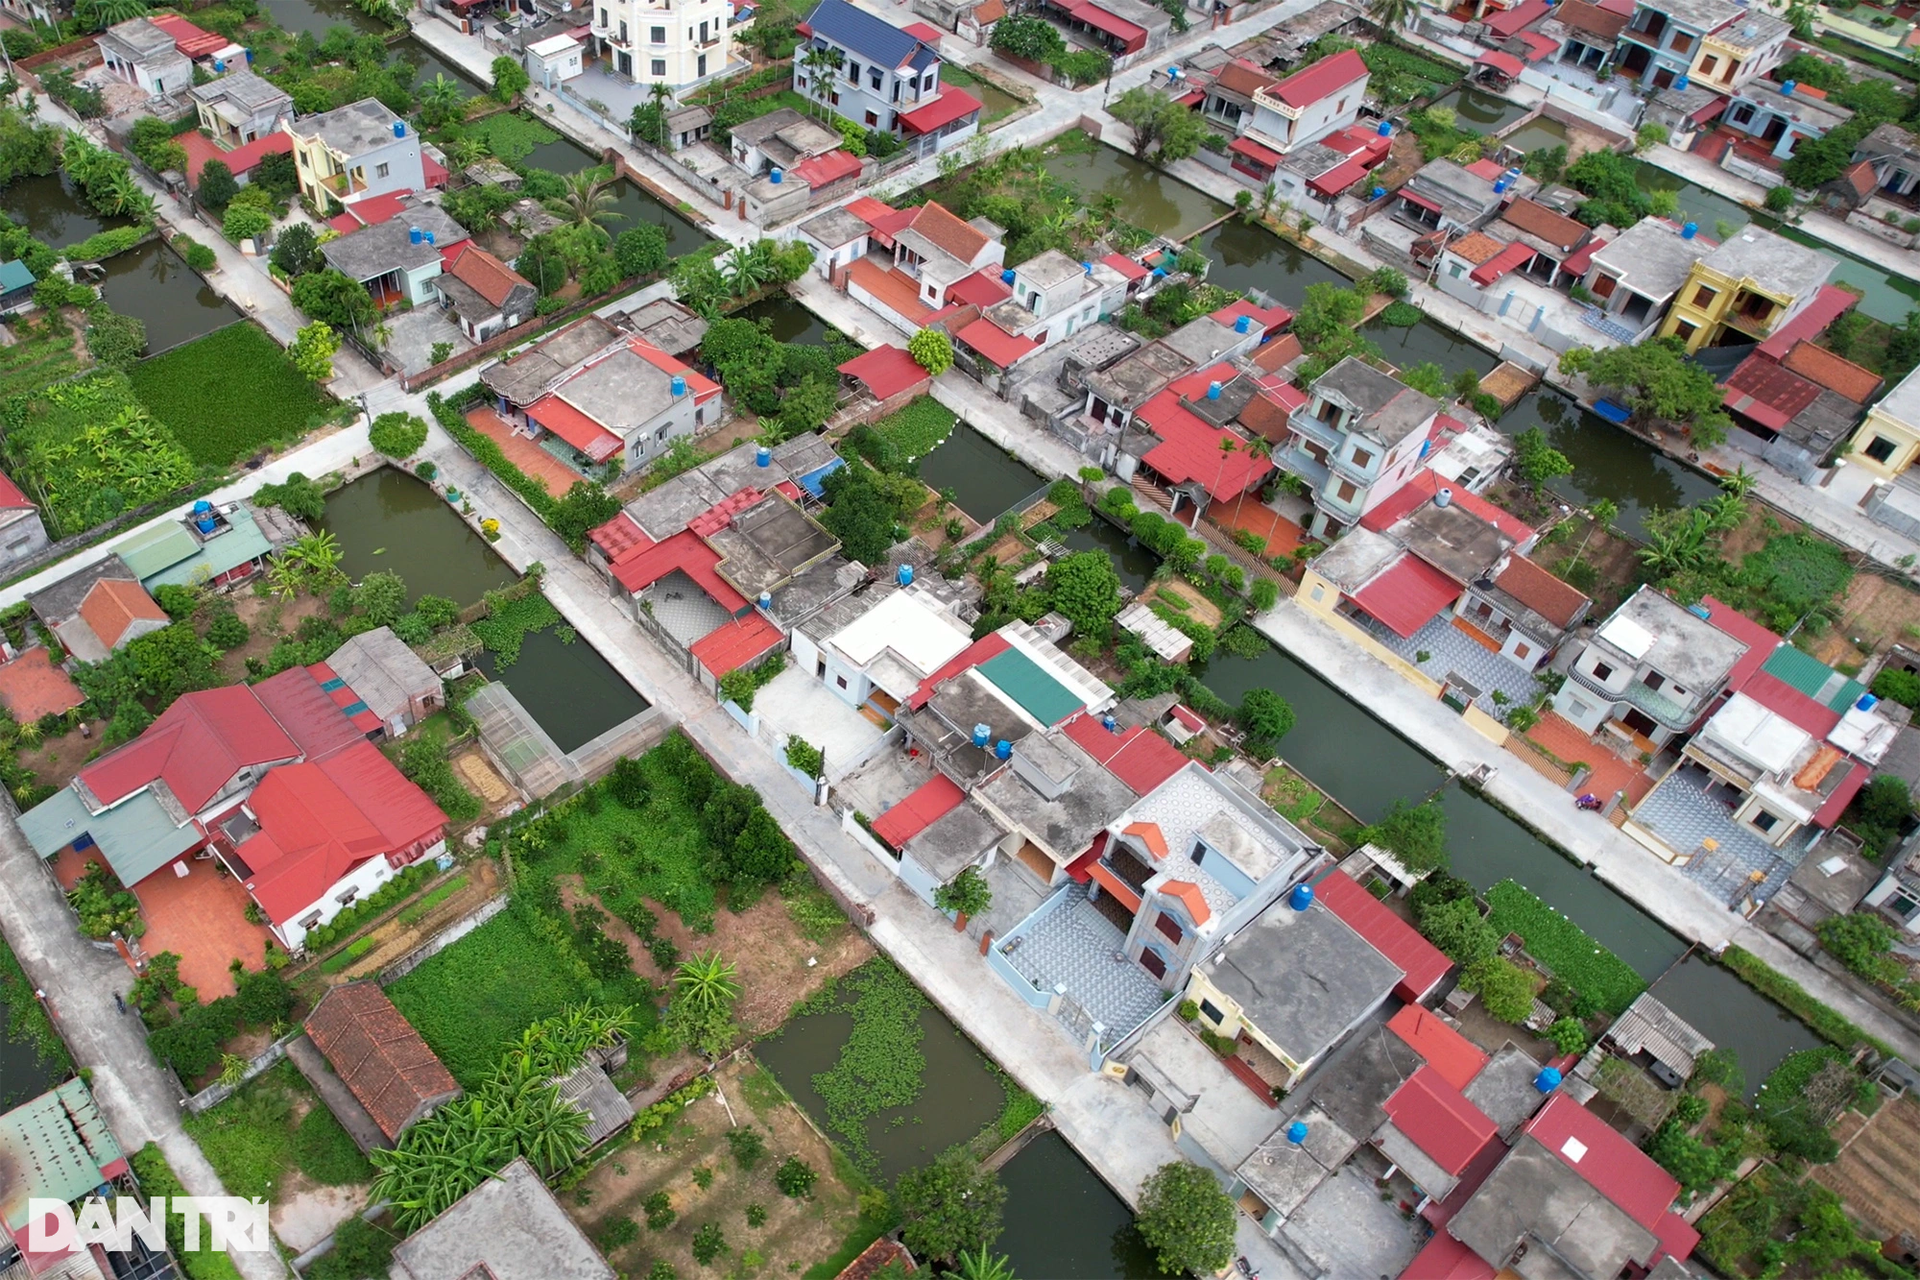 Quy hoạch bàn cờ khu dân cư đẹp như tranh ở làng ven biển Thái Bình - 9